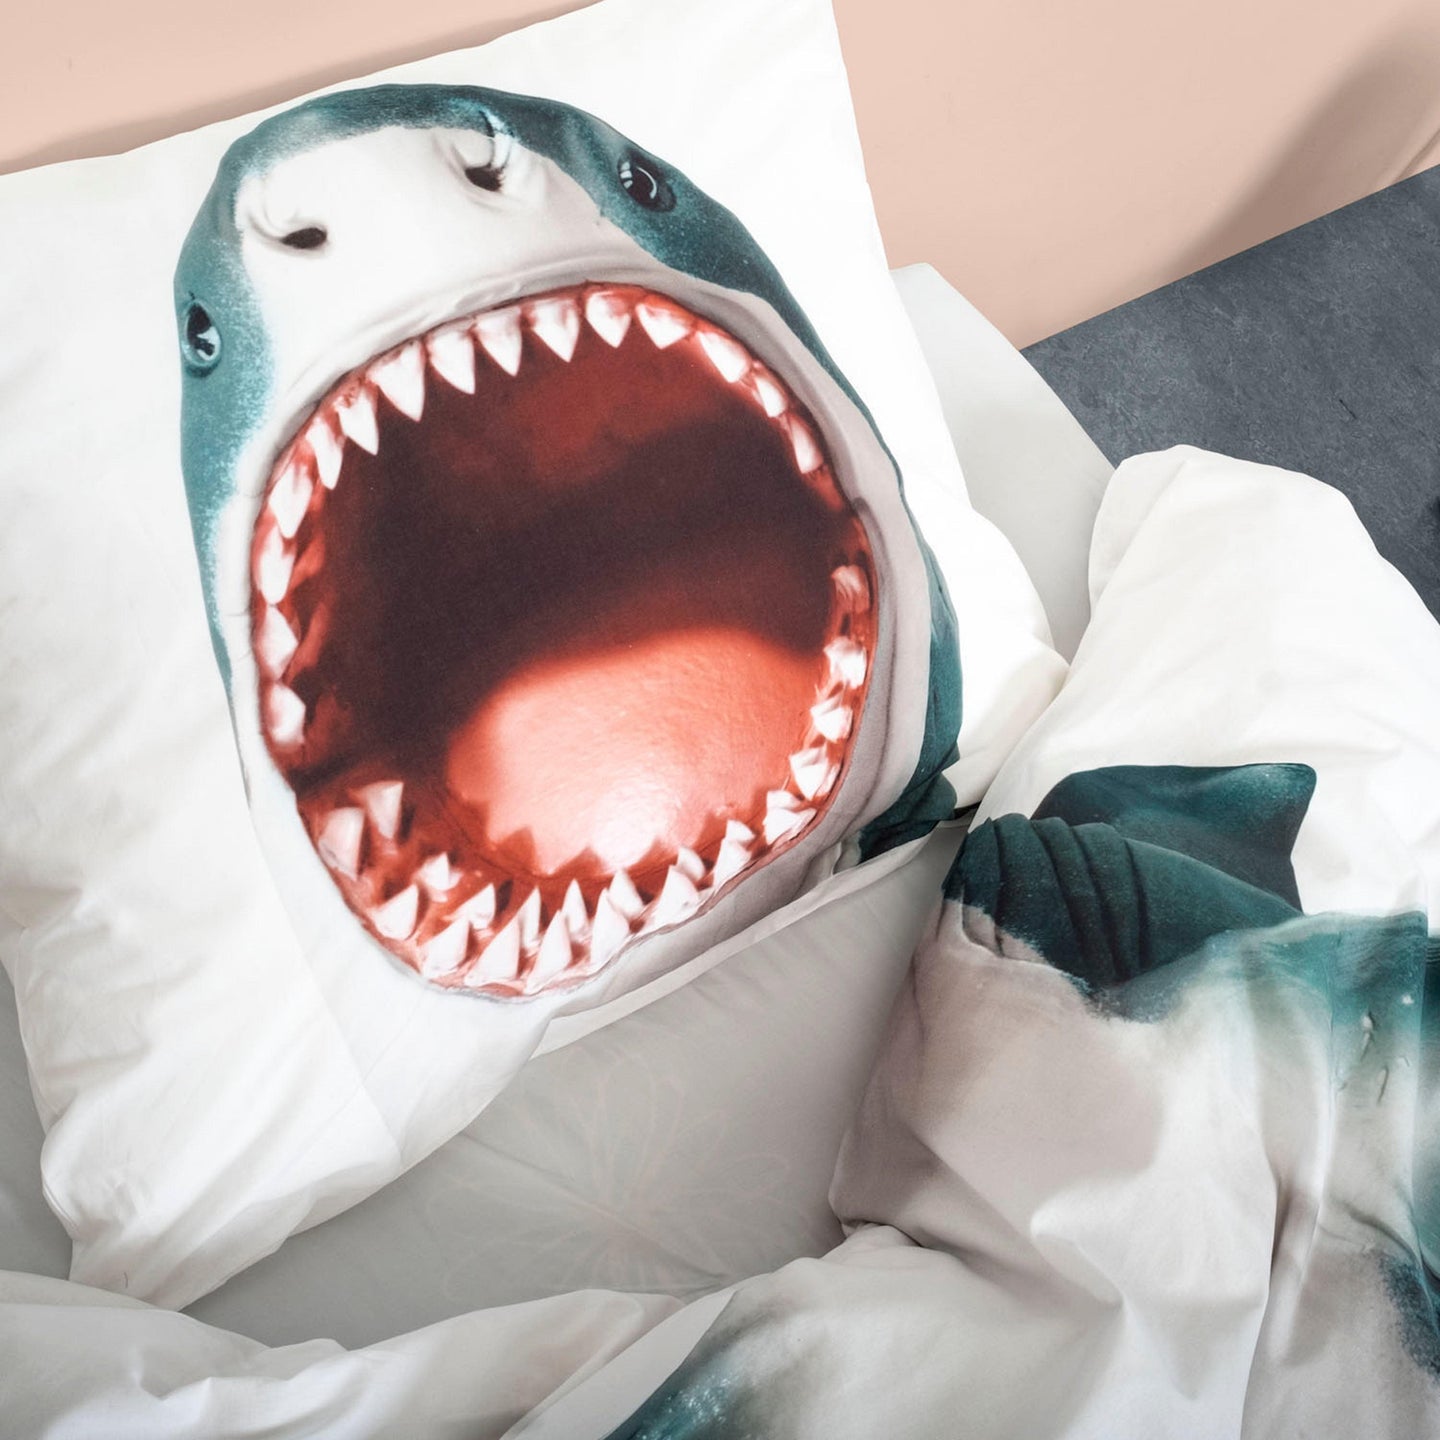 Shark!! pillow case 60 x 70 cm